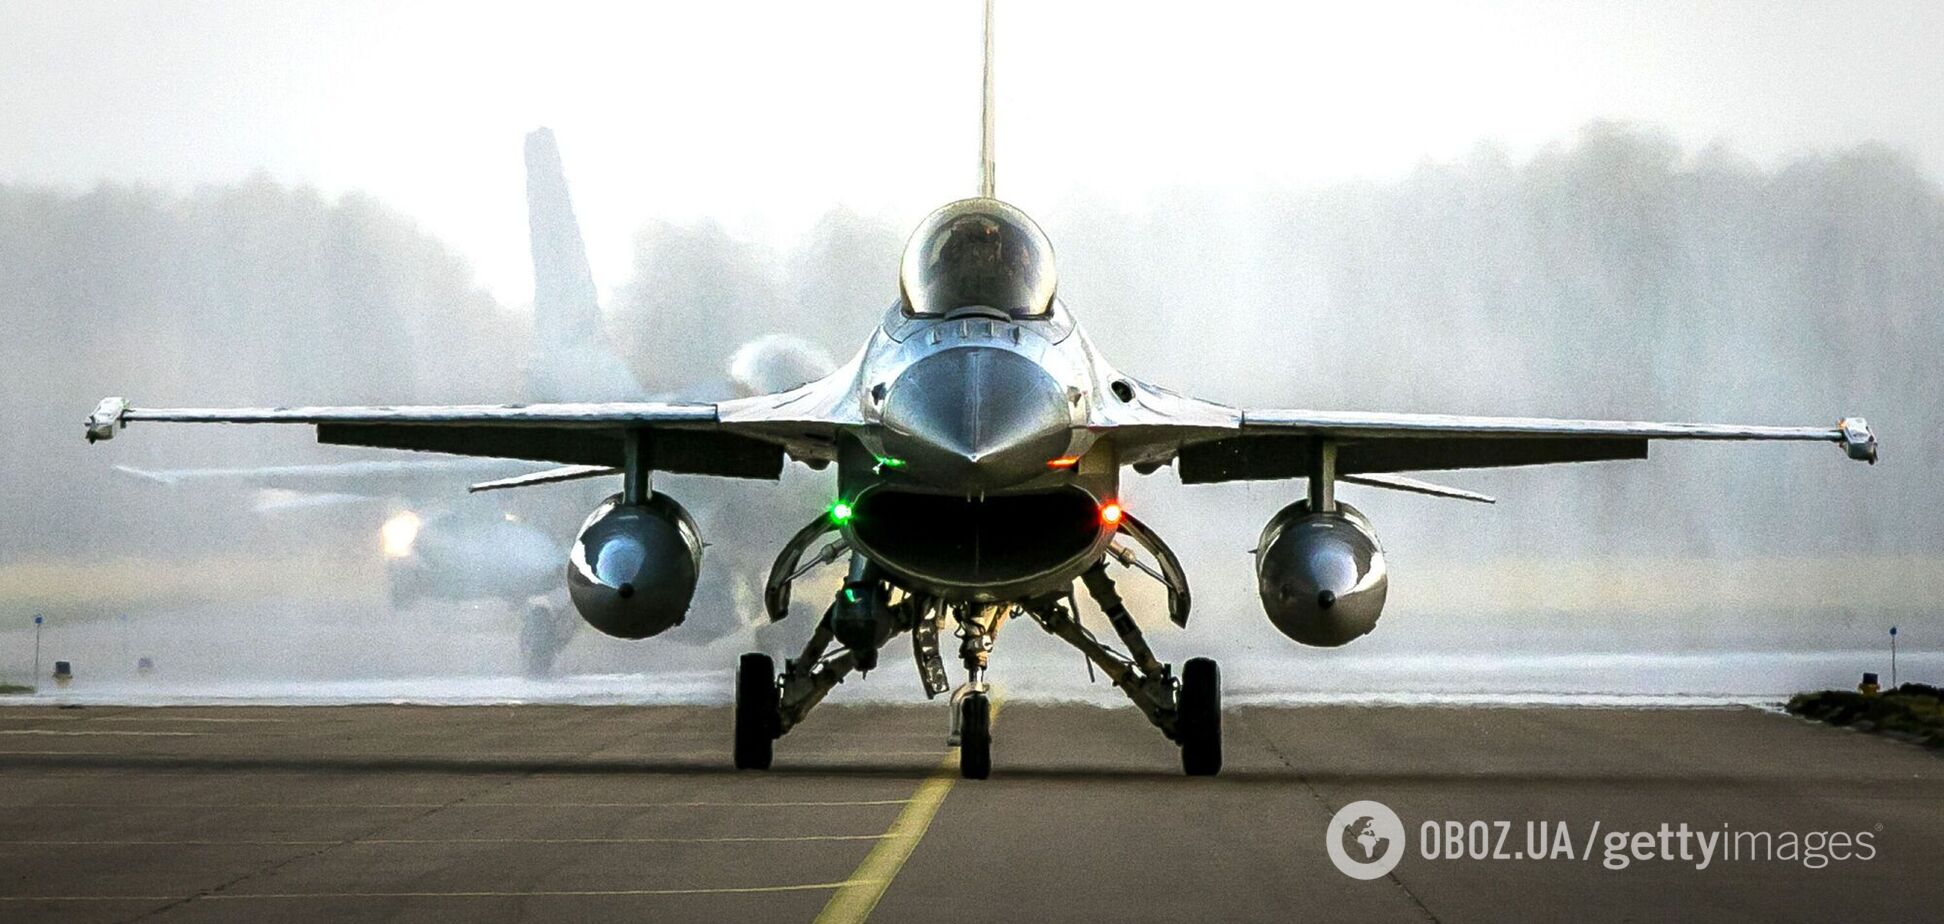 'Процесс не останавливается': в Воздушных силах рассказали об обучении пилотов на F-16